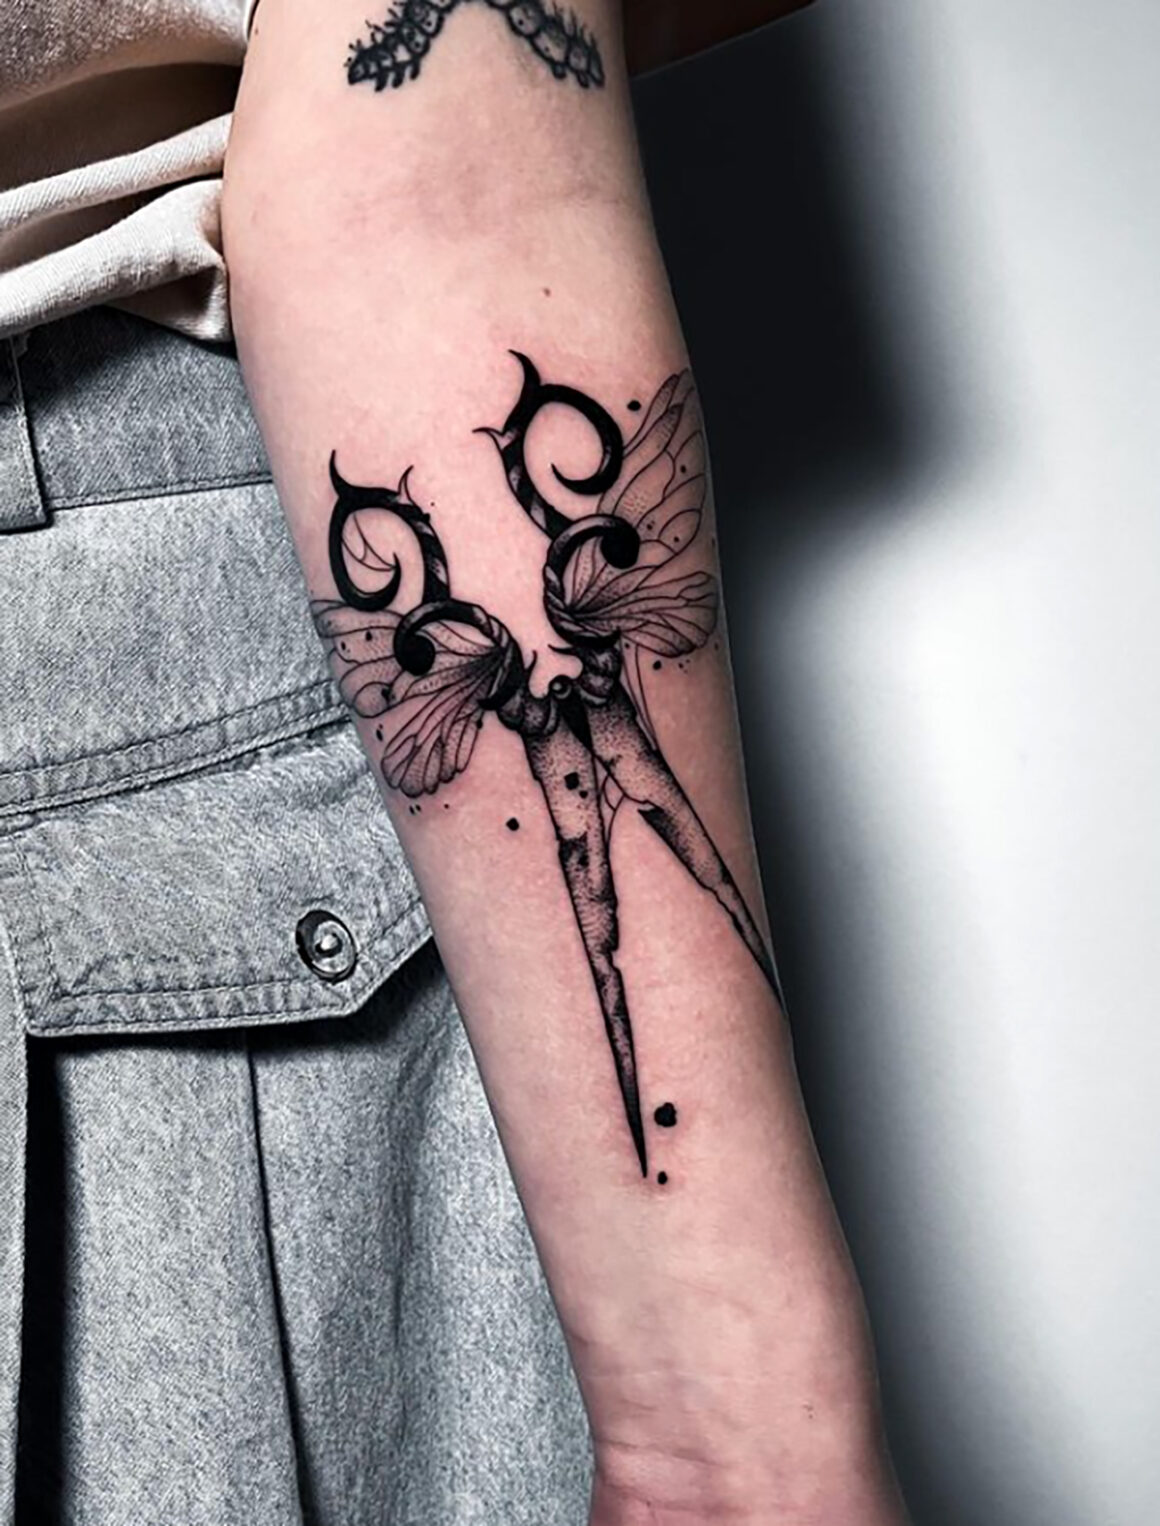 Tattoo by Kate, @noita.tattoo